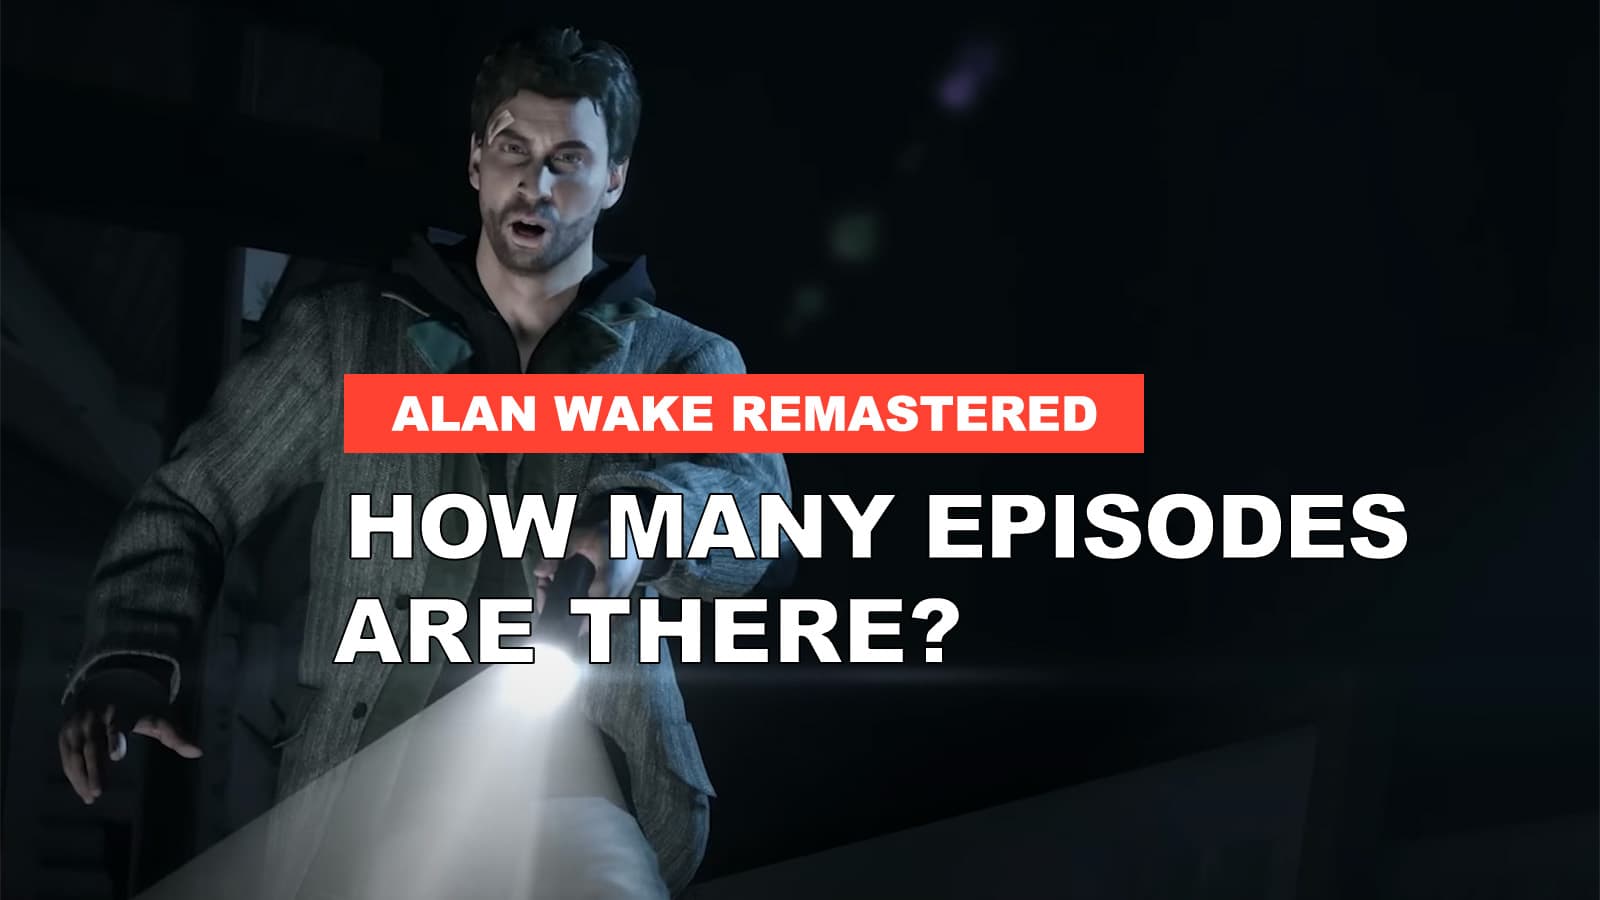 Alan Wake Remastered Episodes